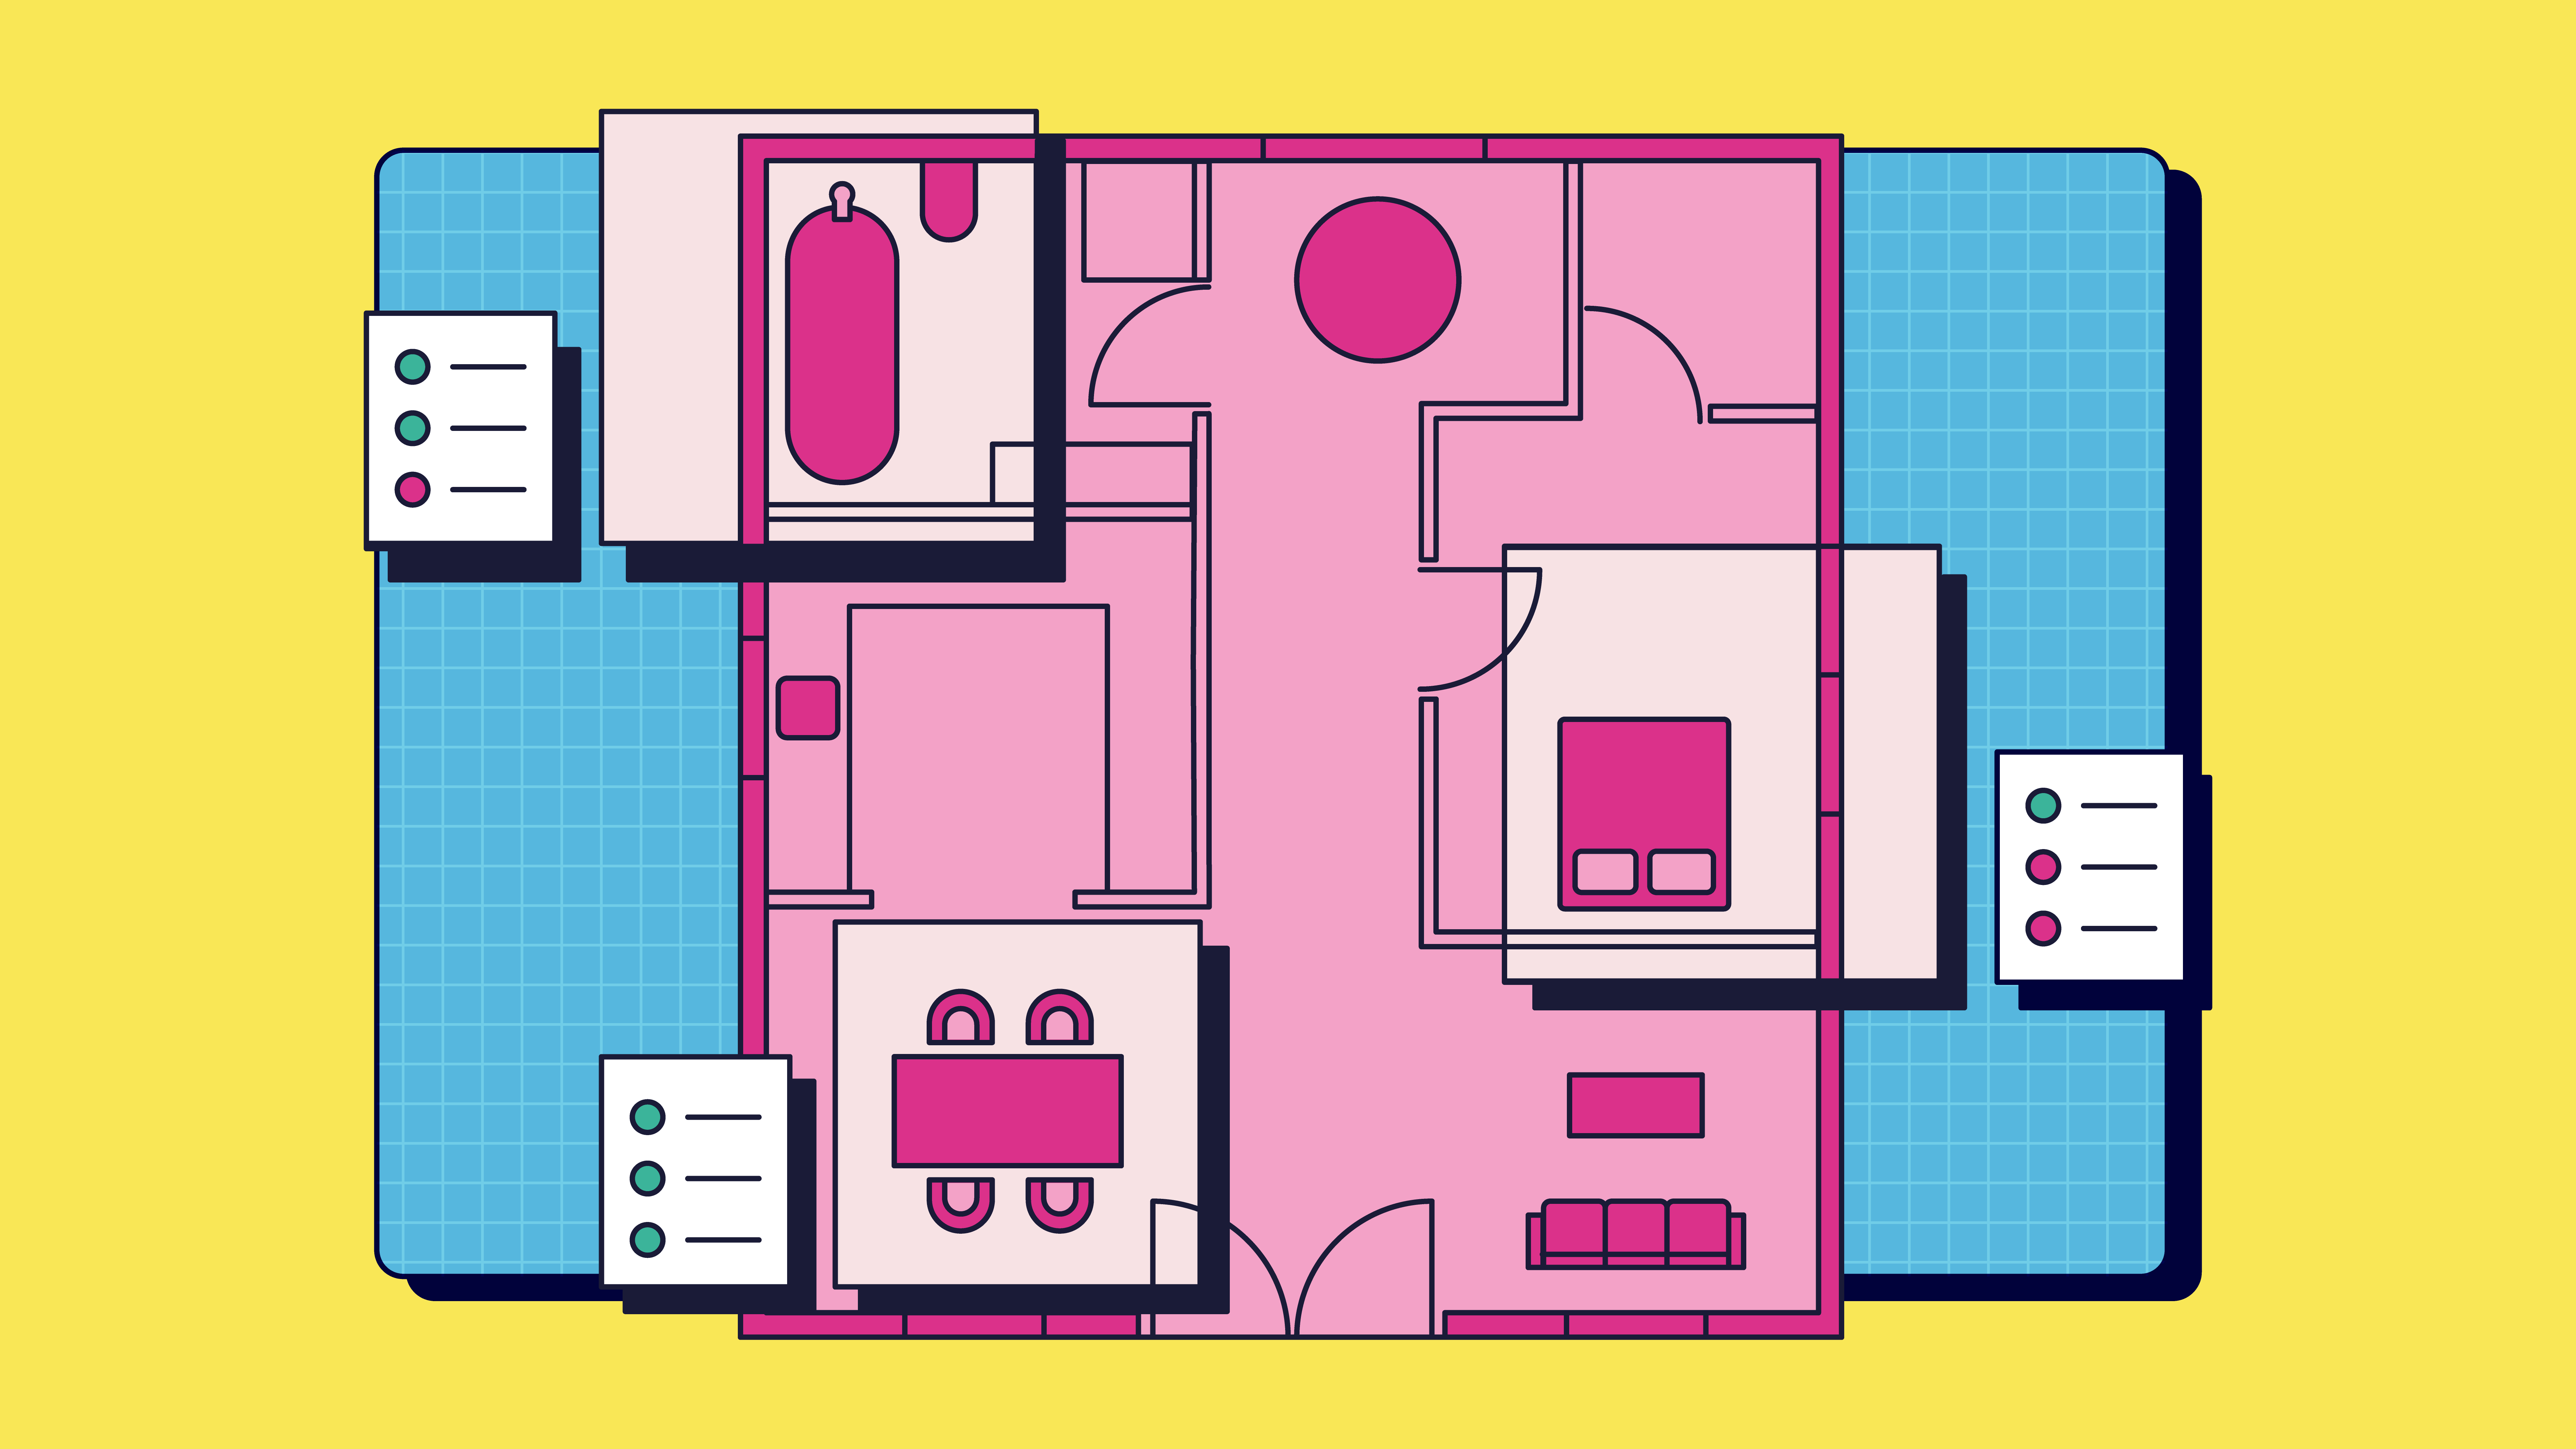 The Dreamhouse floorplan